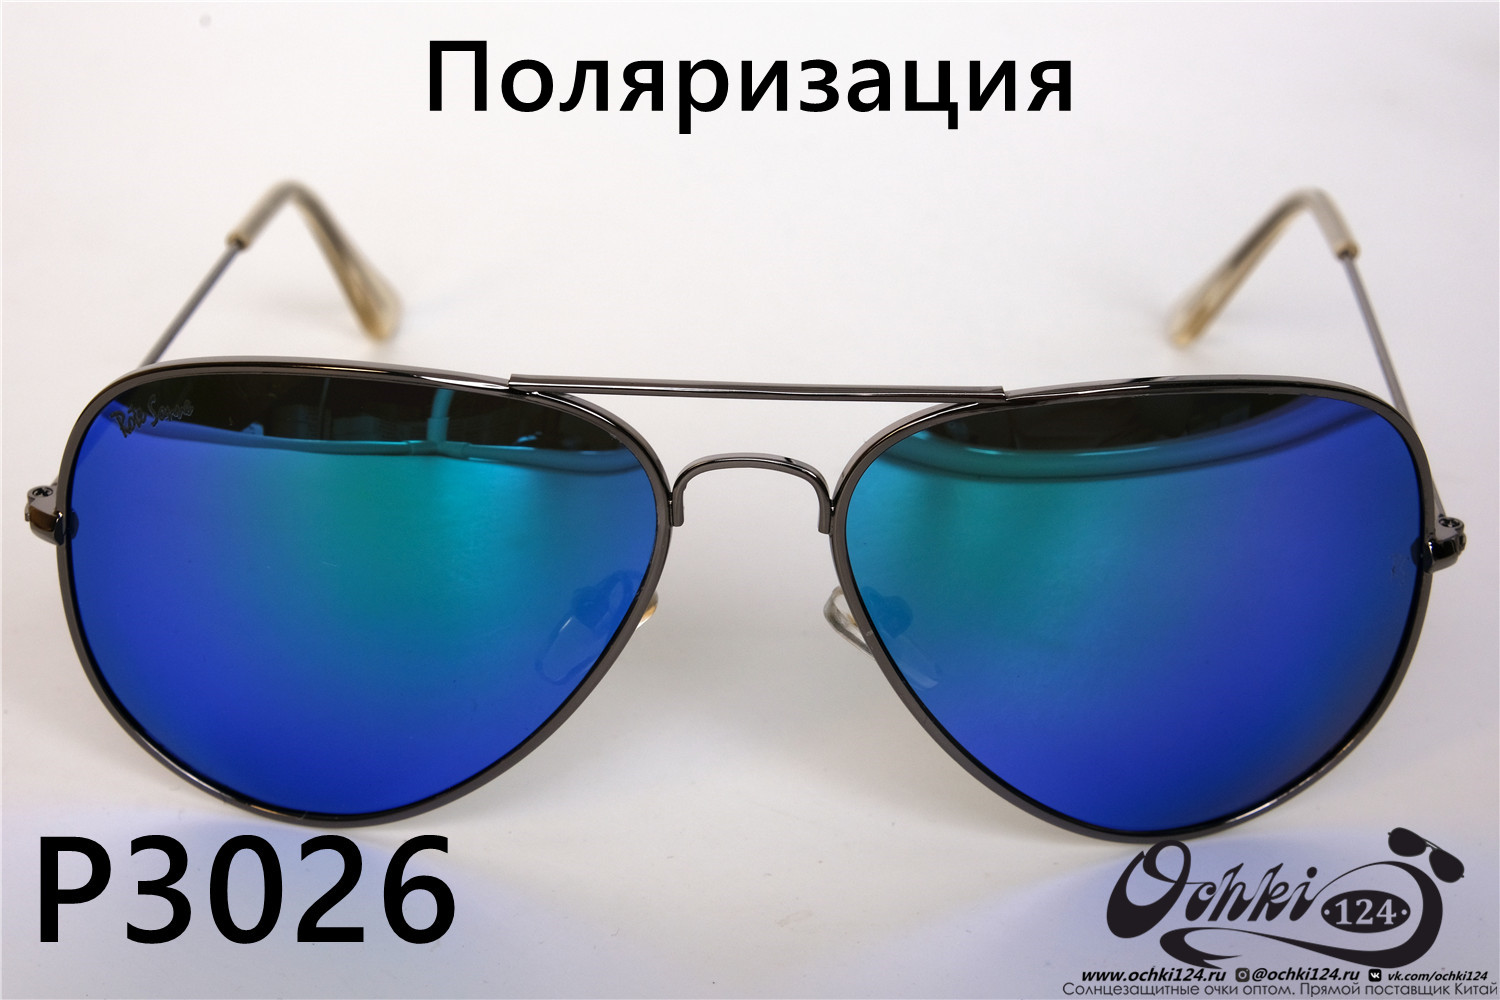  Солнцезащитные очки картинка 2022 Унисекс Поляризованные Авиаторы Rote Sonne P3026-6 